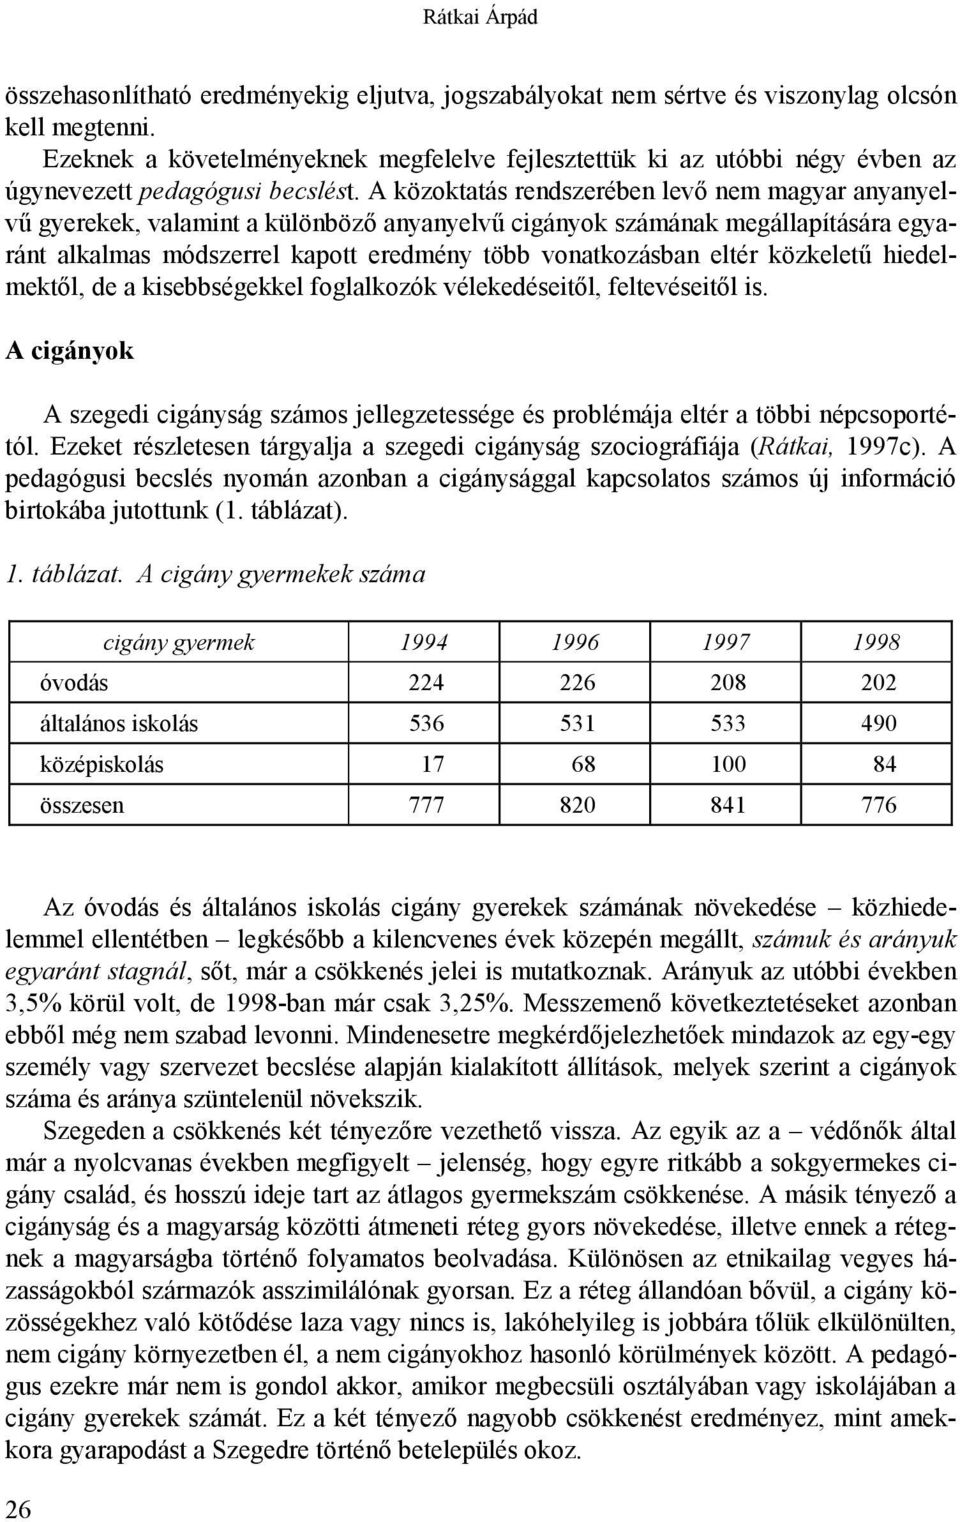 A közoktatás rendszerében levő nem magyar anyanyelvű gyerekek, valamint a különböző anyanyelvű cigányok számának megállapítására egyaránt alkalmas módszerrel kapott eredmény több vonatkozásban eltér